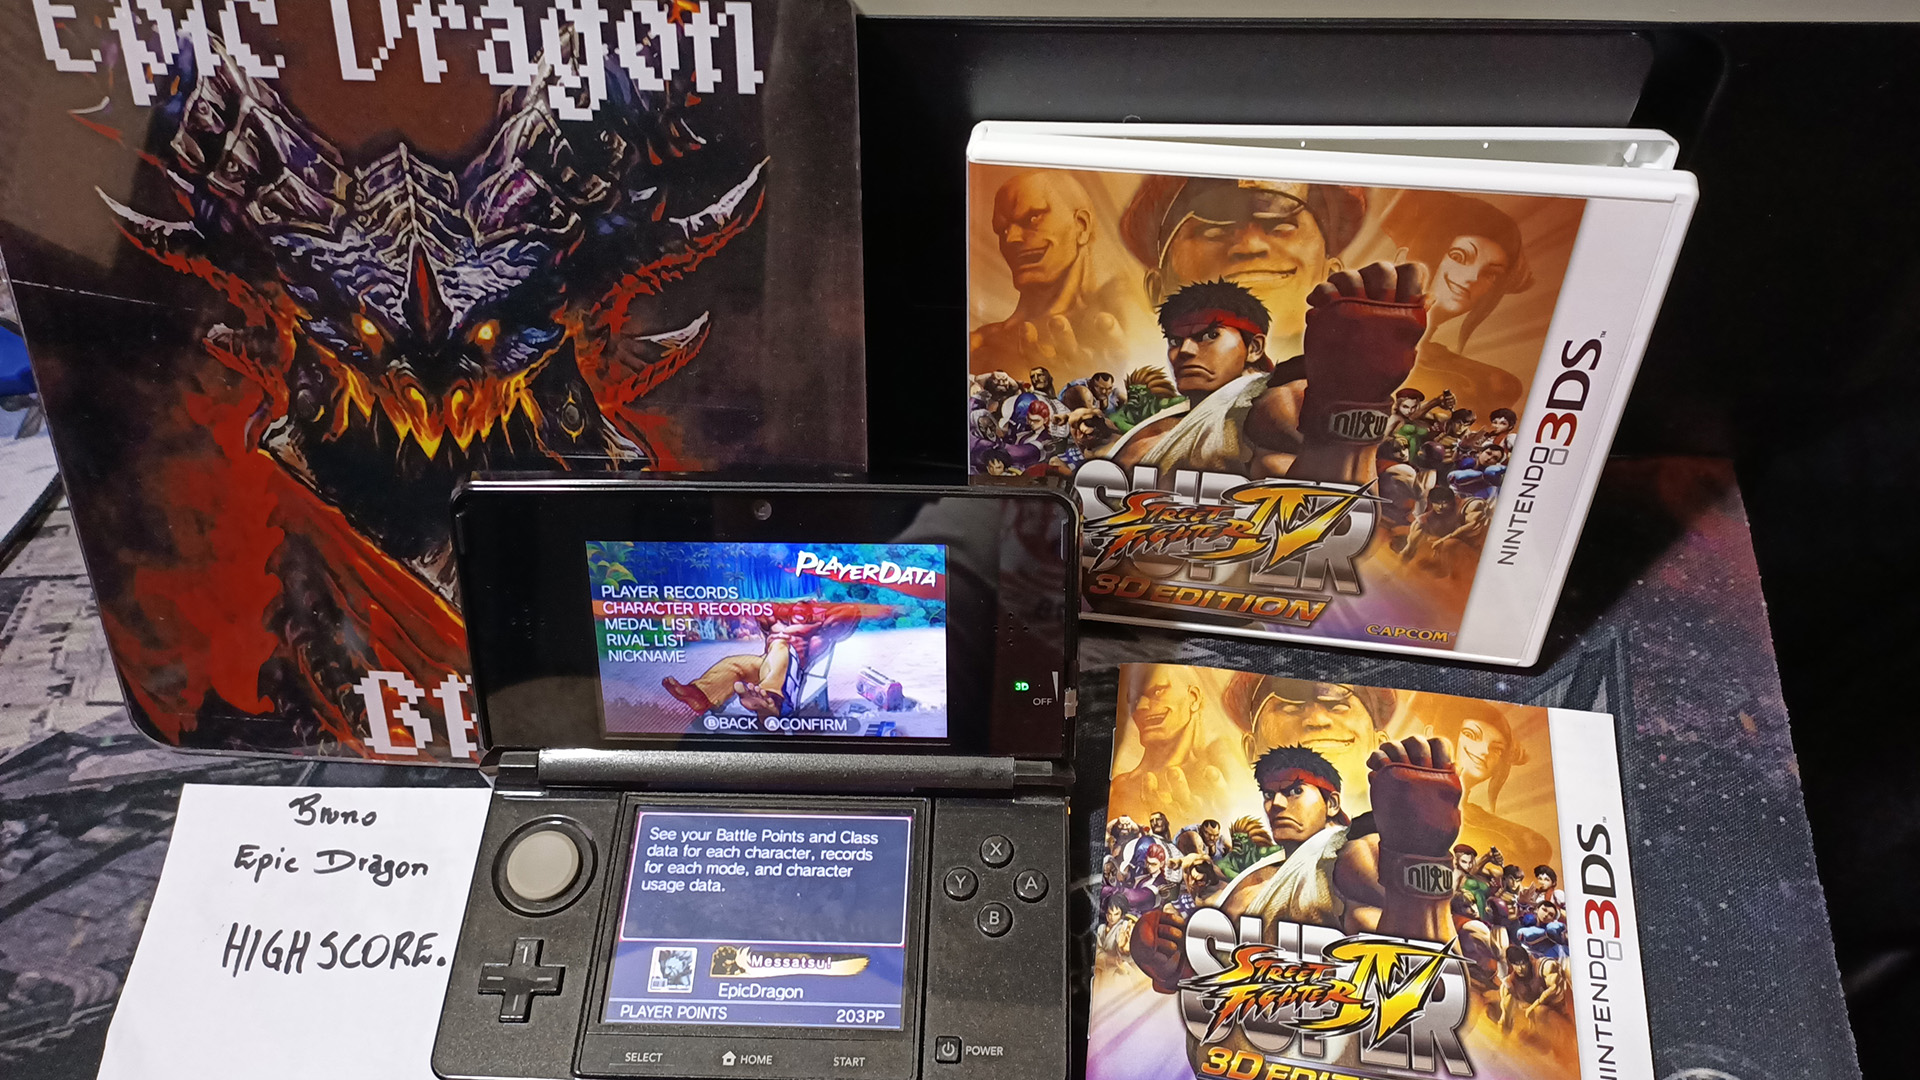 EpicDragon: Super Street Fighter IV 3D Edition: Challenge: Barrel Buster [Abel] (Nintendo 3DS) 64,300 points on 2022-08-01 20:47:31